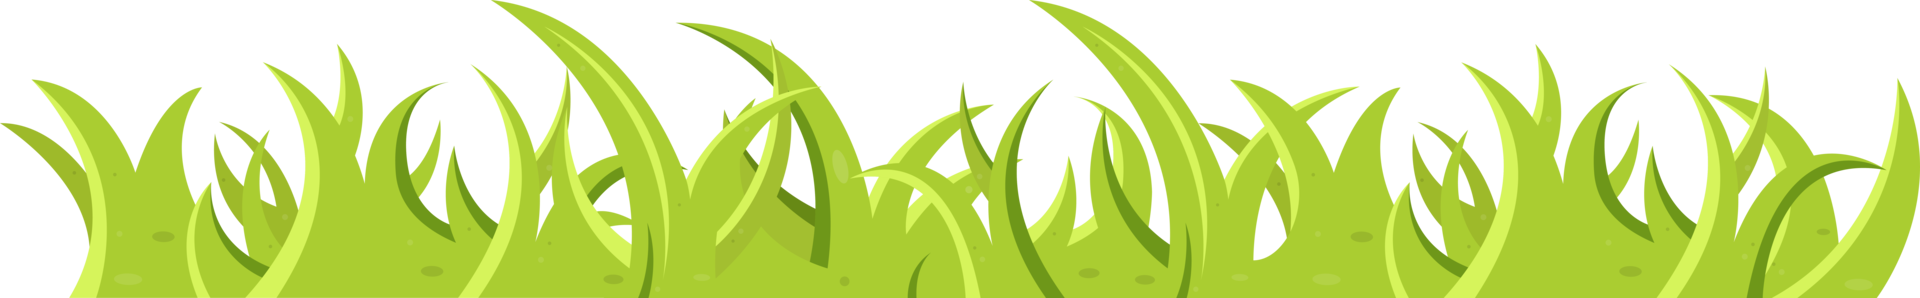 grama verde e folhas em estilo cartoon png